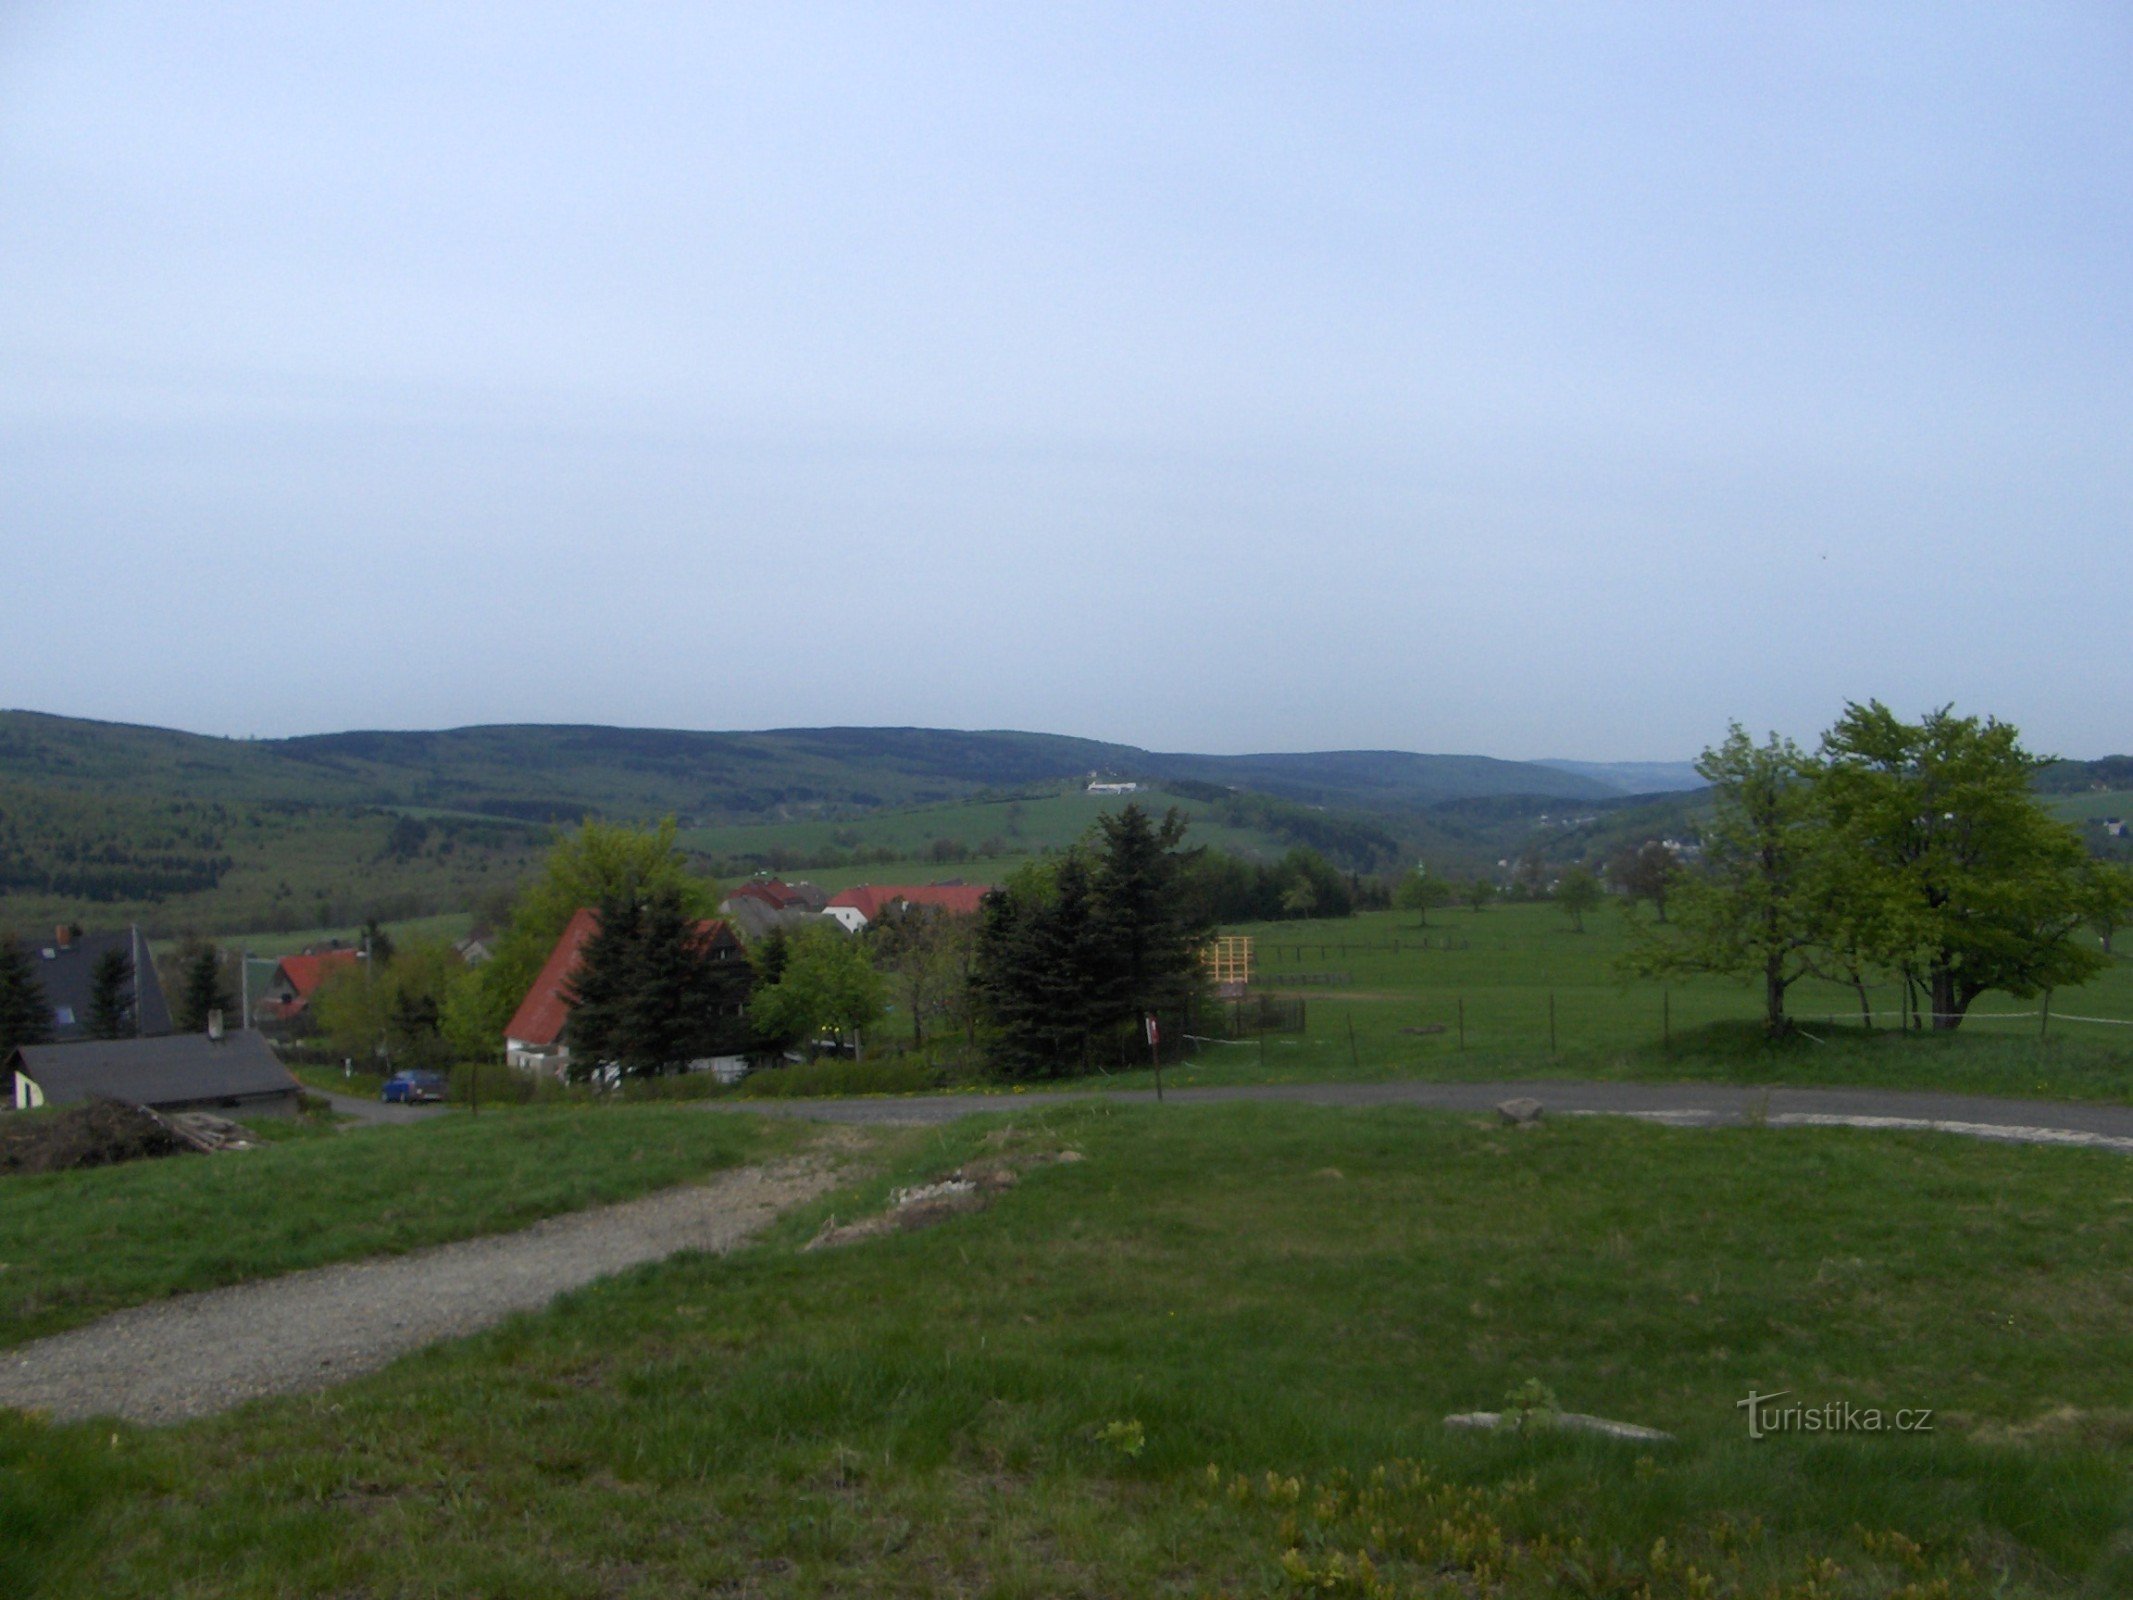 Pogled prema brdu sv. Kateřiny i greben Kamenné vrch